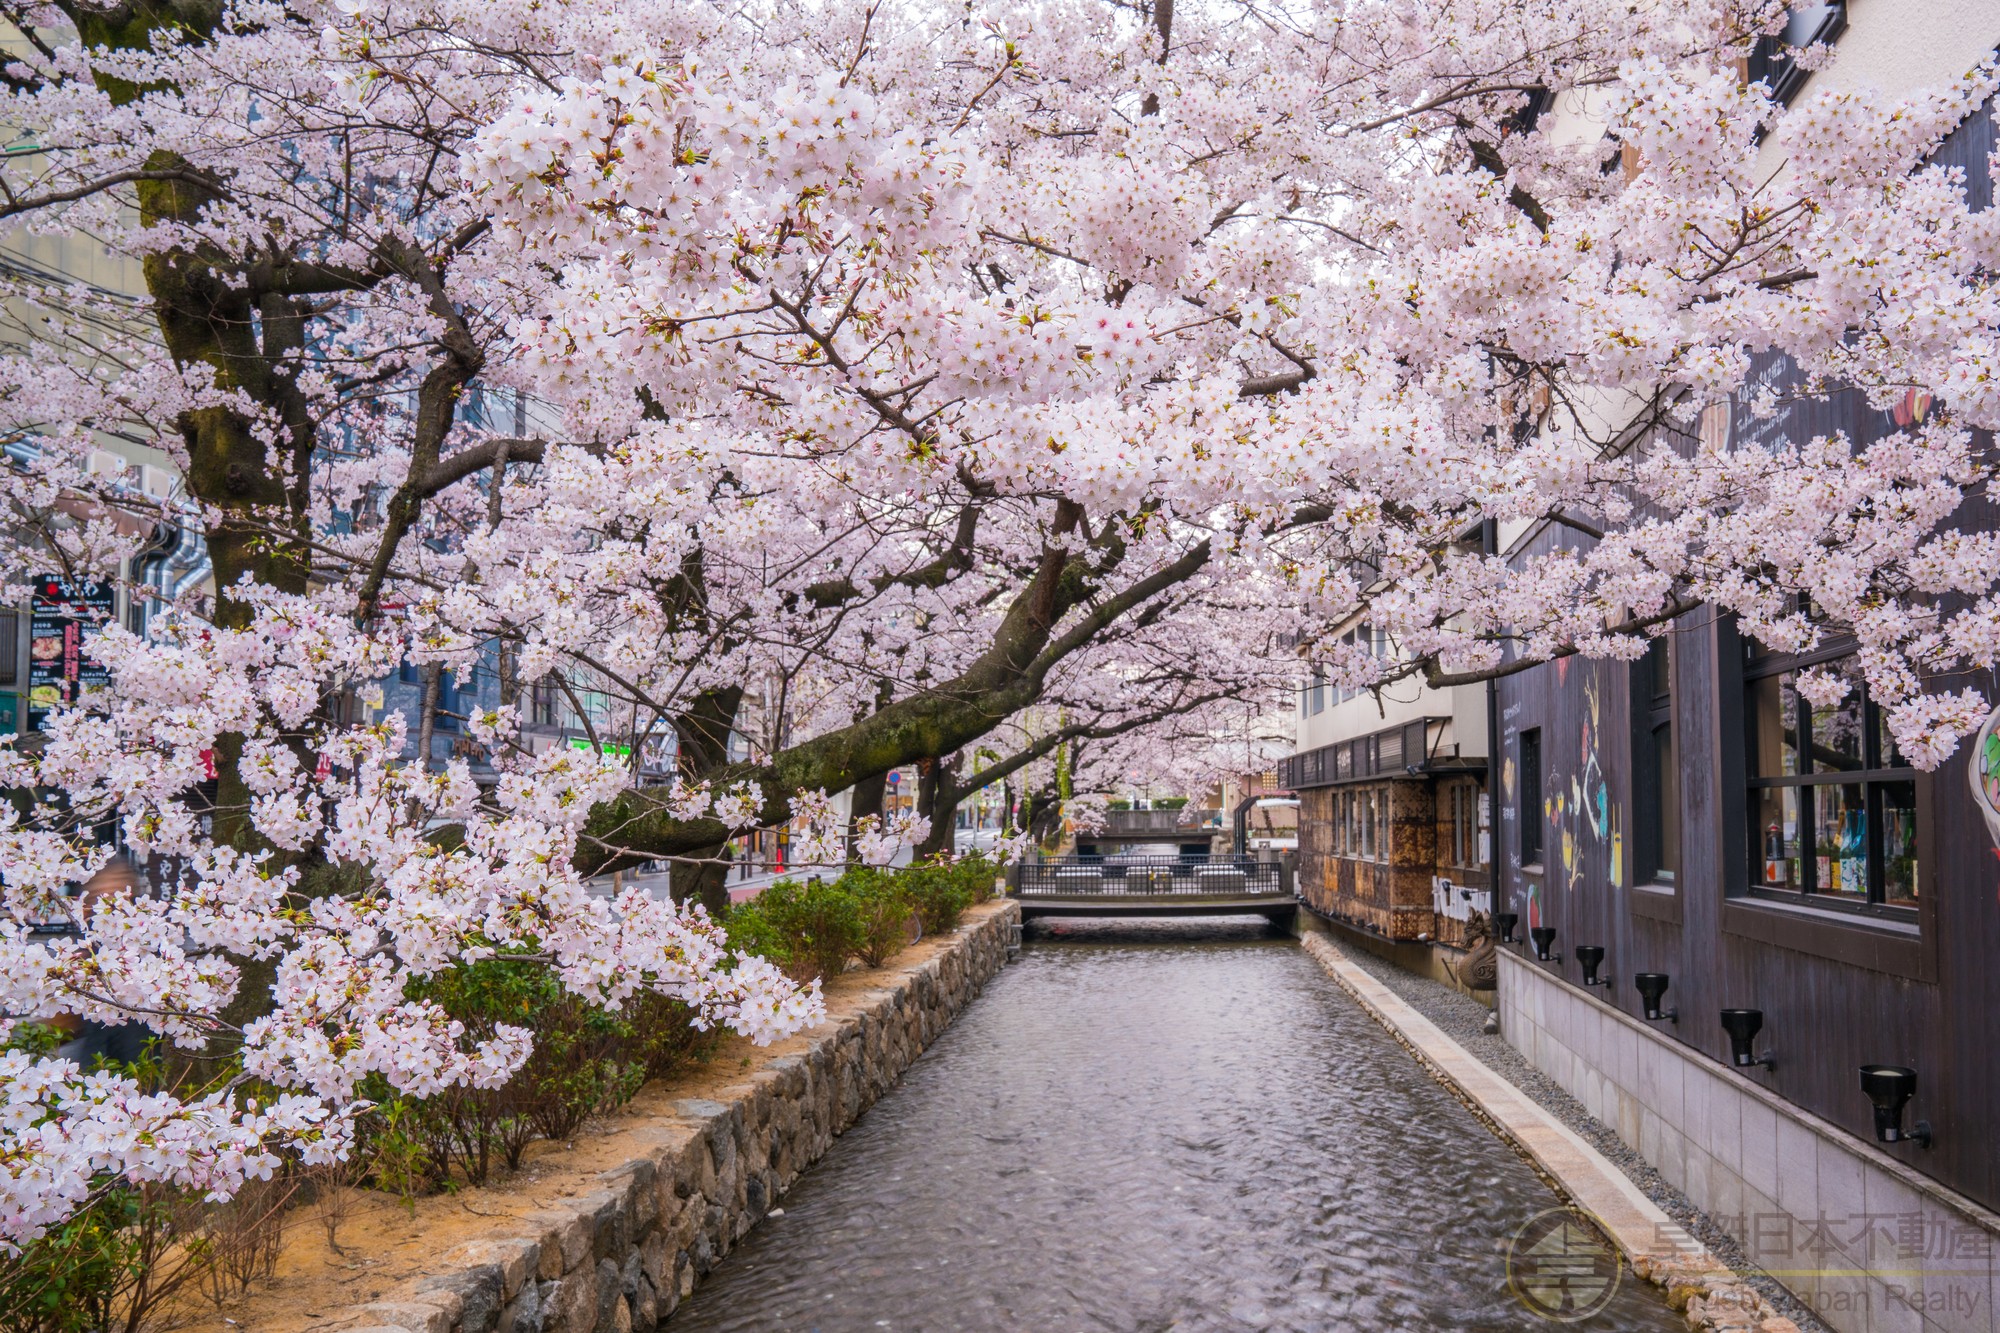 京都市內屈指可數的繁華街而熱鬧的河原町，殘留有京都風格的街道—祇園四條